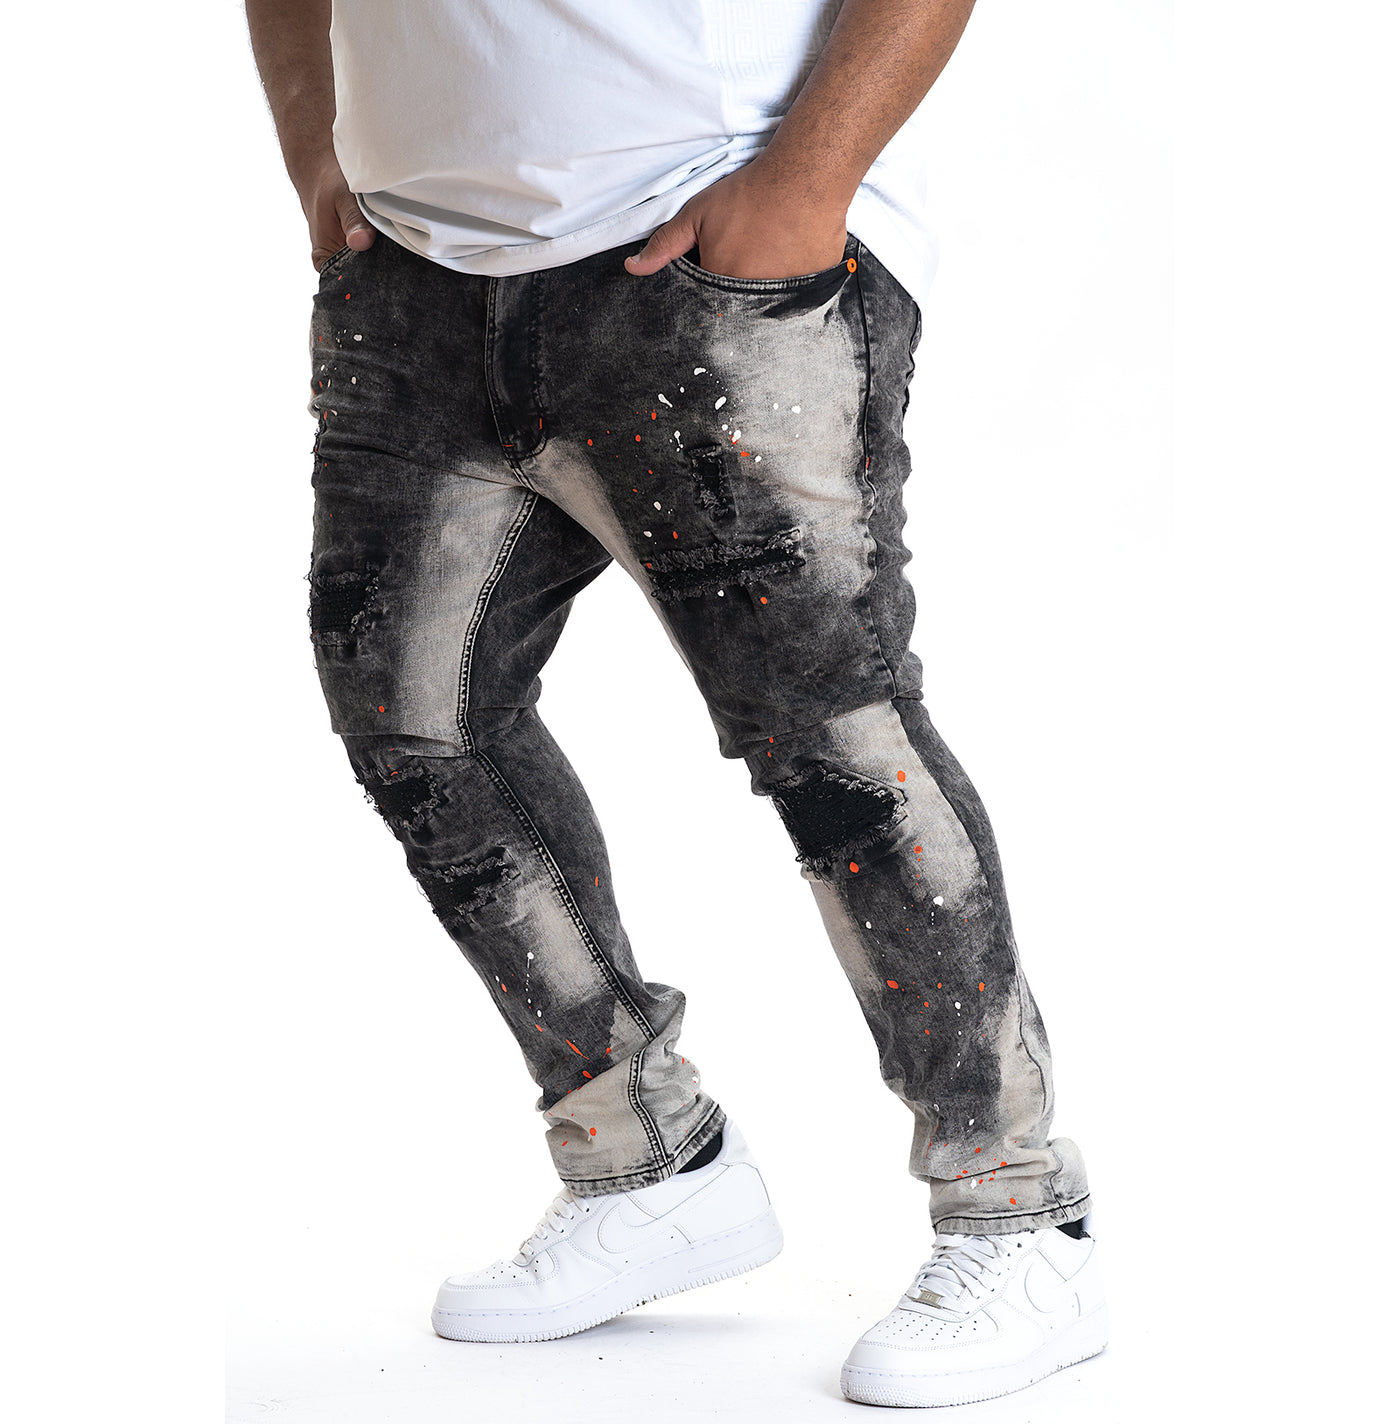 M1725 Shredded Denim Jeans with Paint Splashes - Black